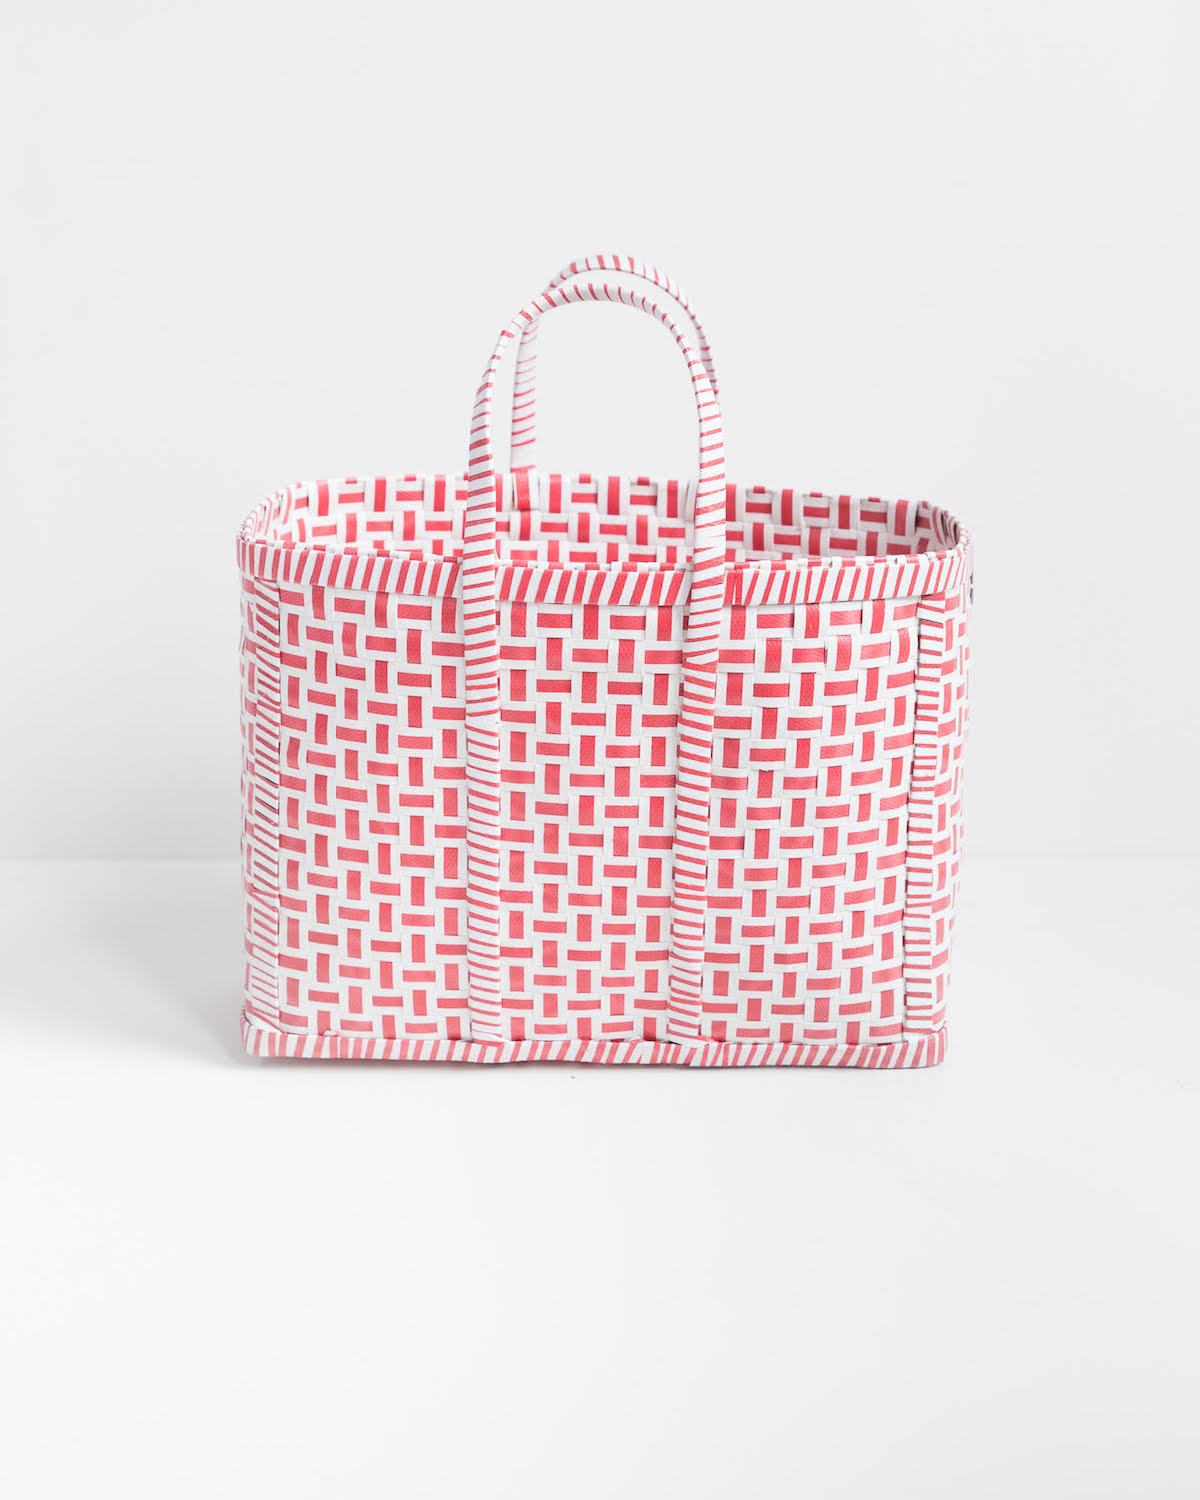 Basket in Red & White, Shopping Basket